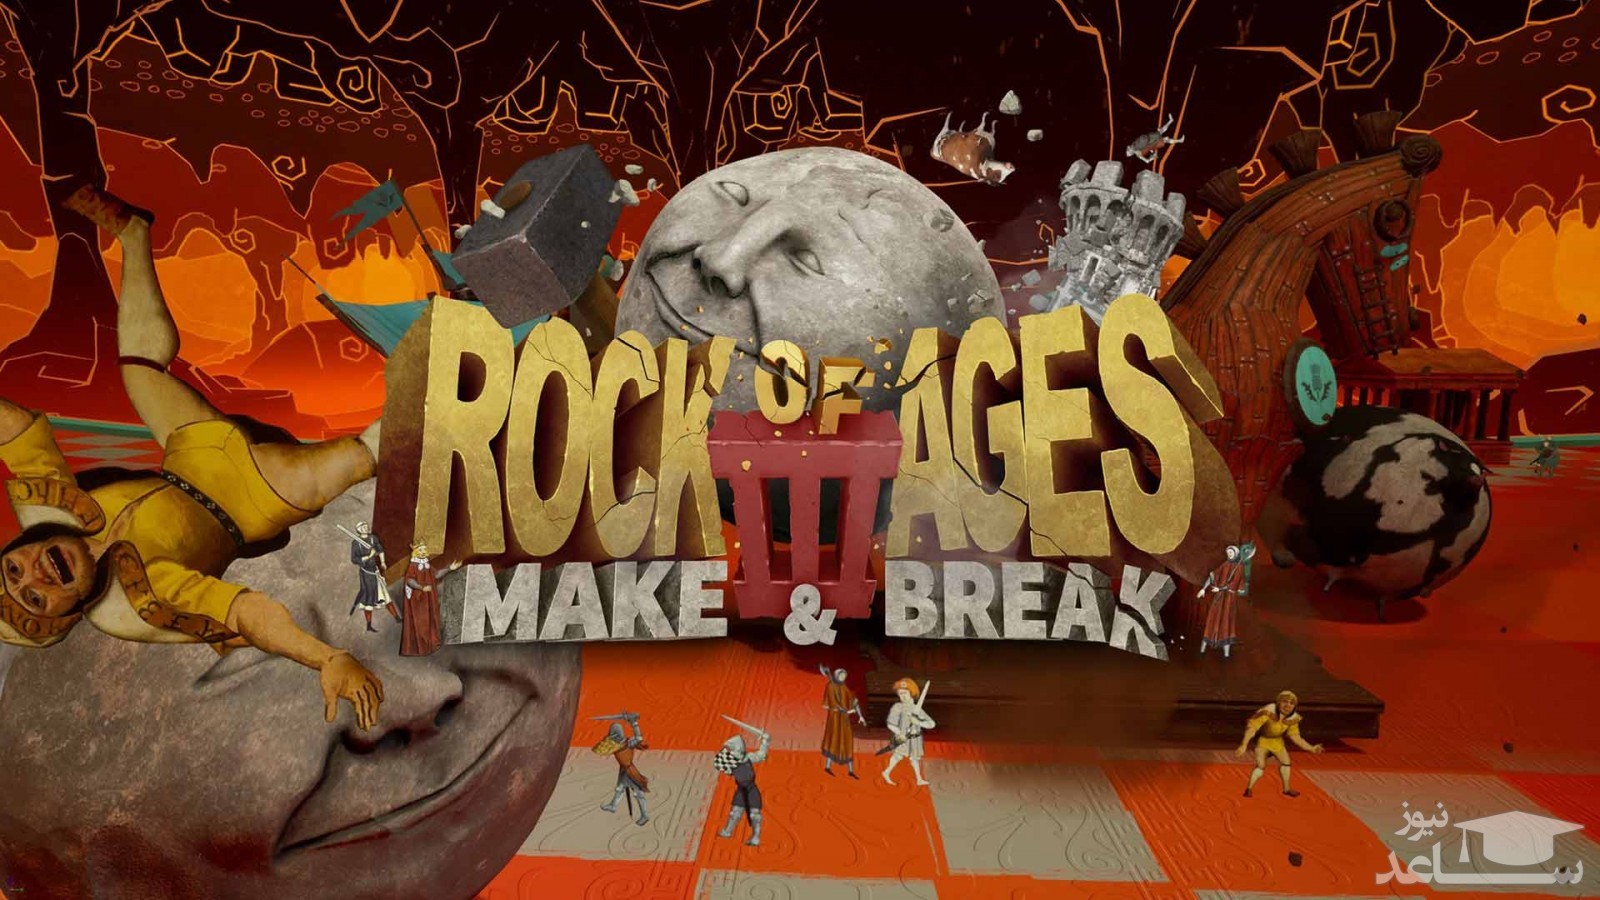 معرفی و بررسی بازی Rock of Ages 3 Make & Break